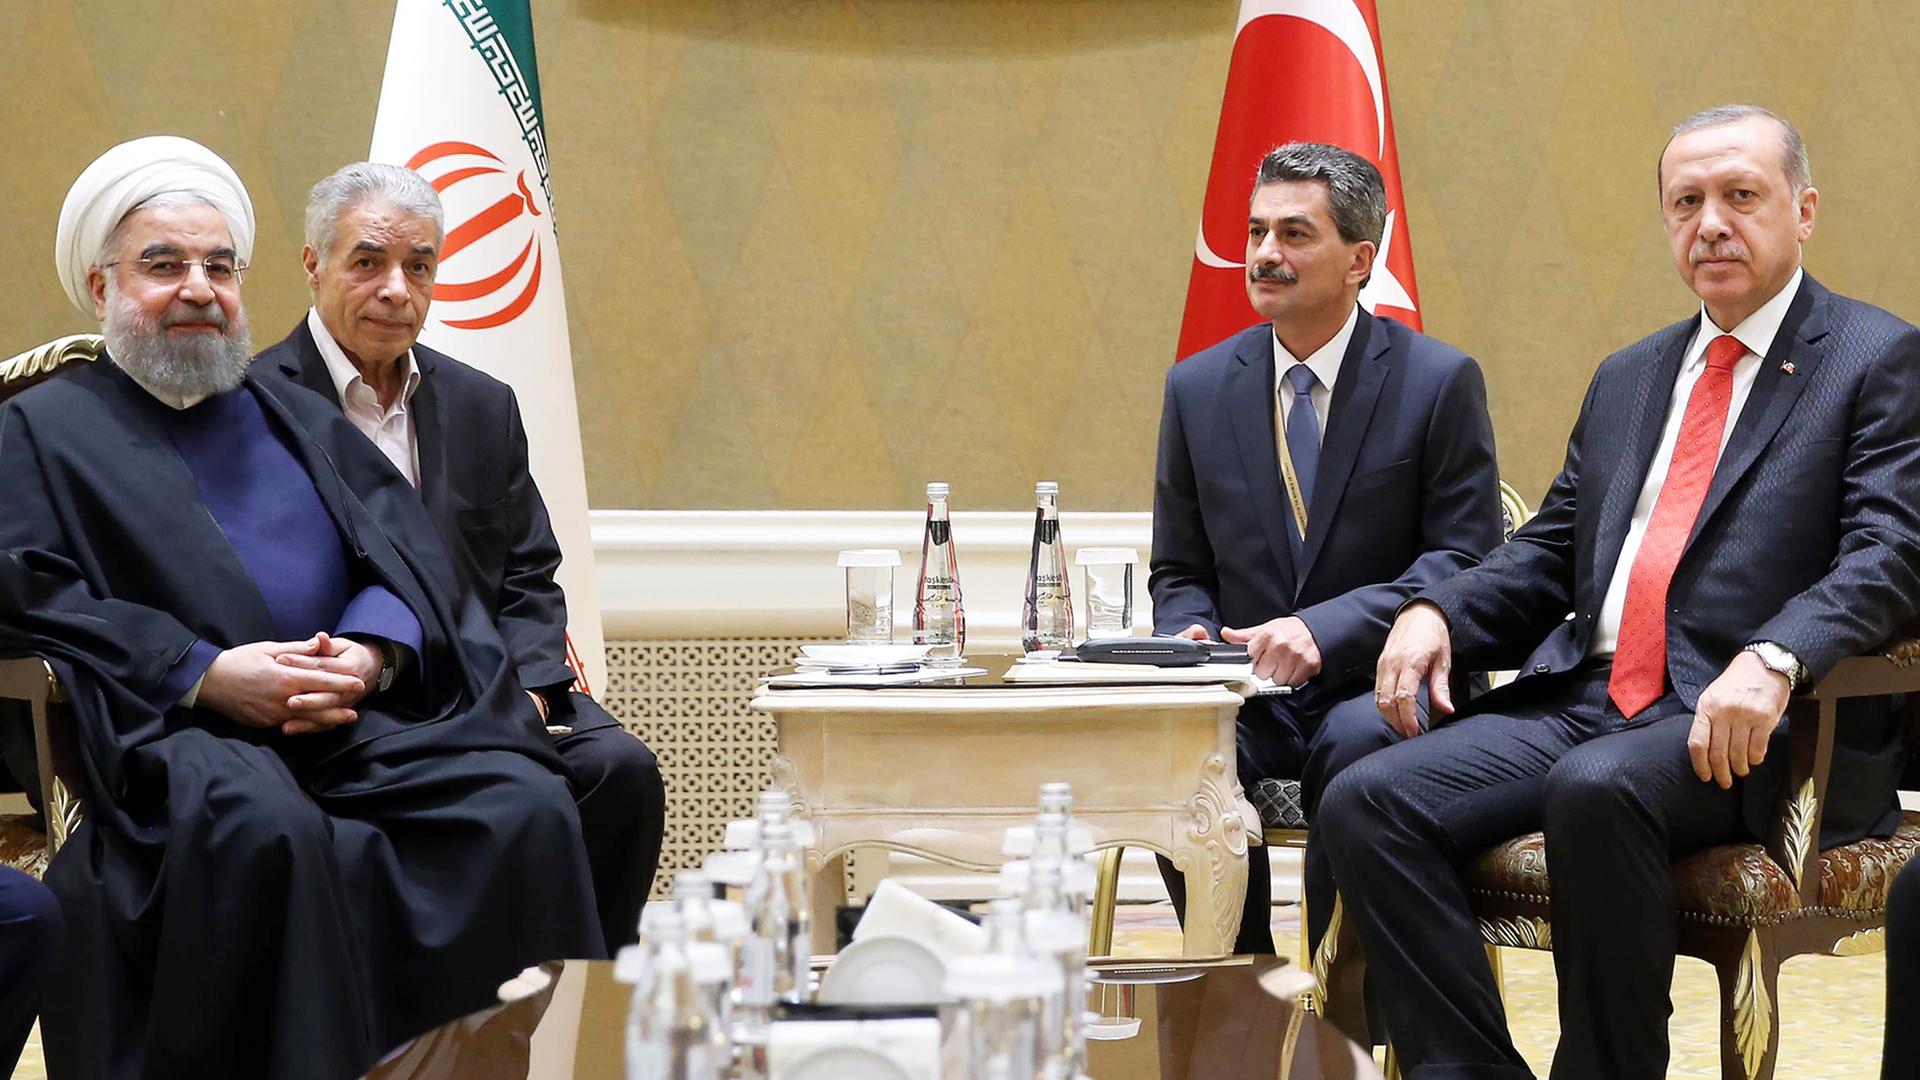 Der iranische Präsident Rohani und der türkische Präsident Erdogan